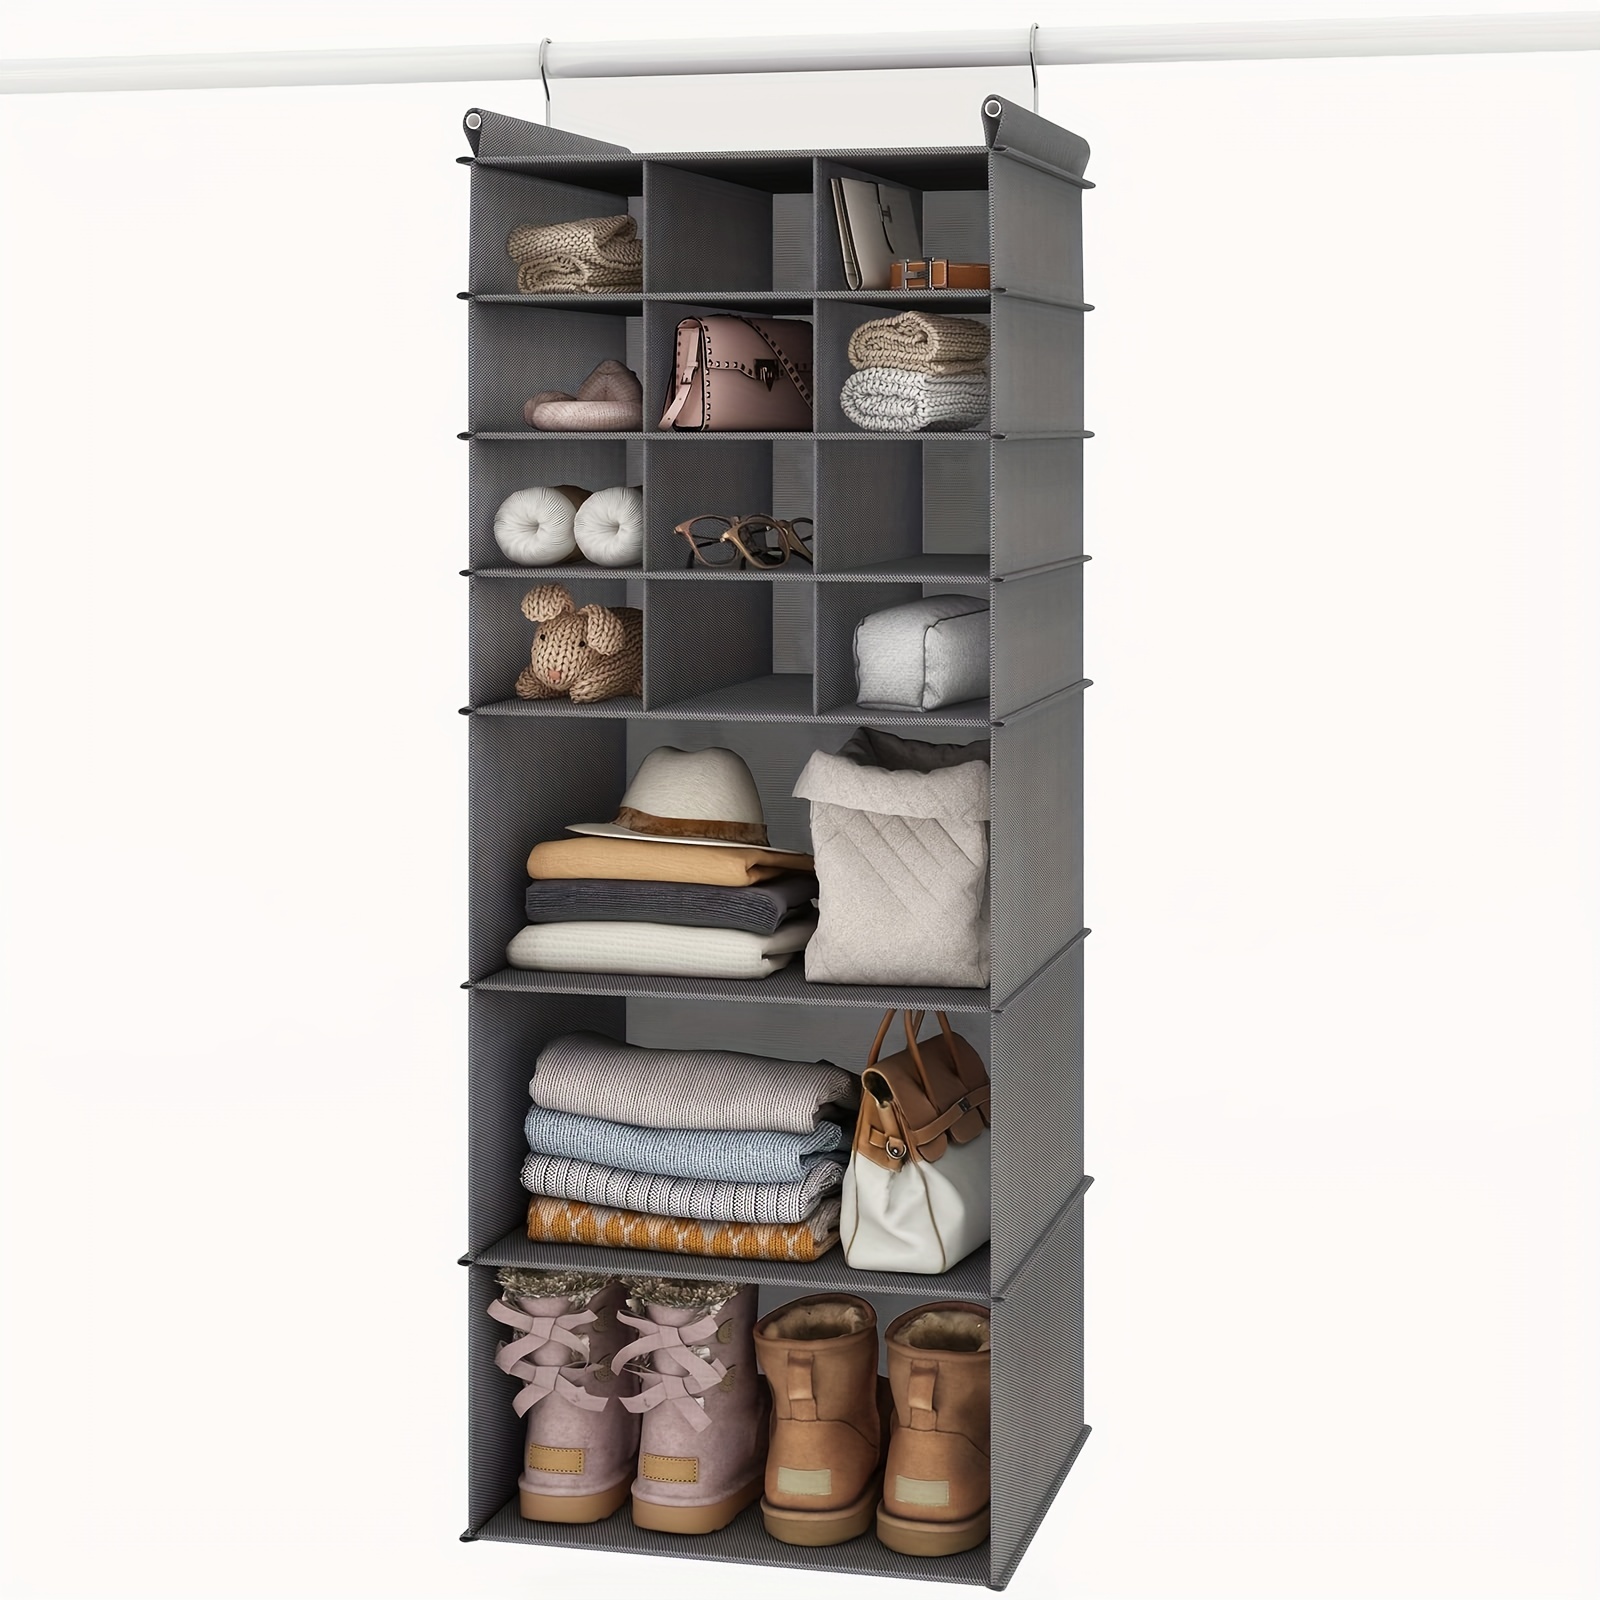 Organizador de ropa para colgar en el armario gris con 6 compartimientos